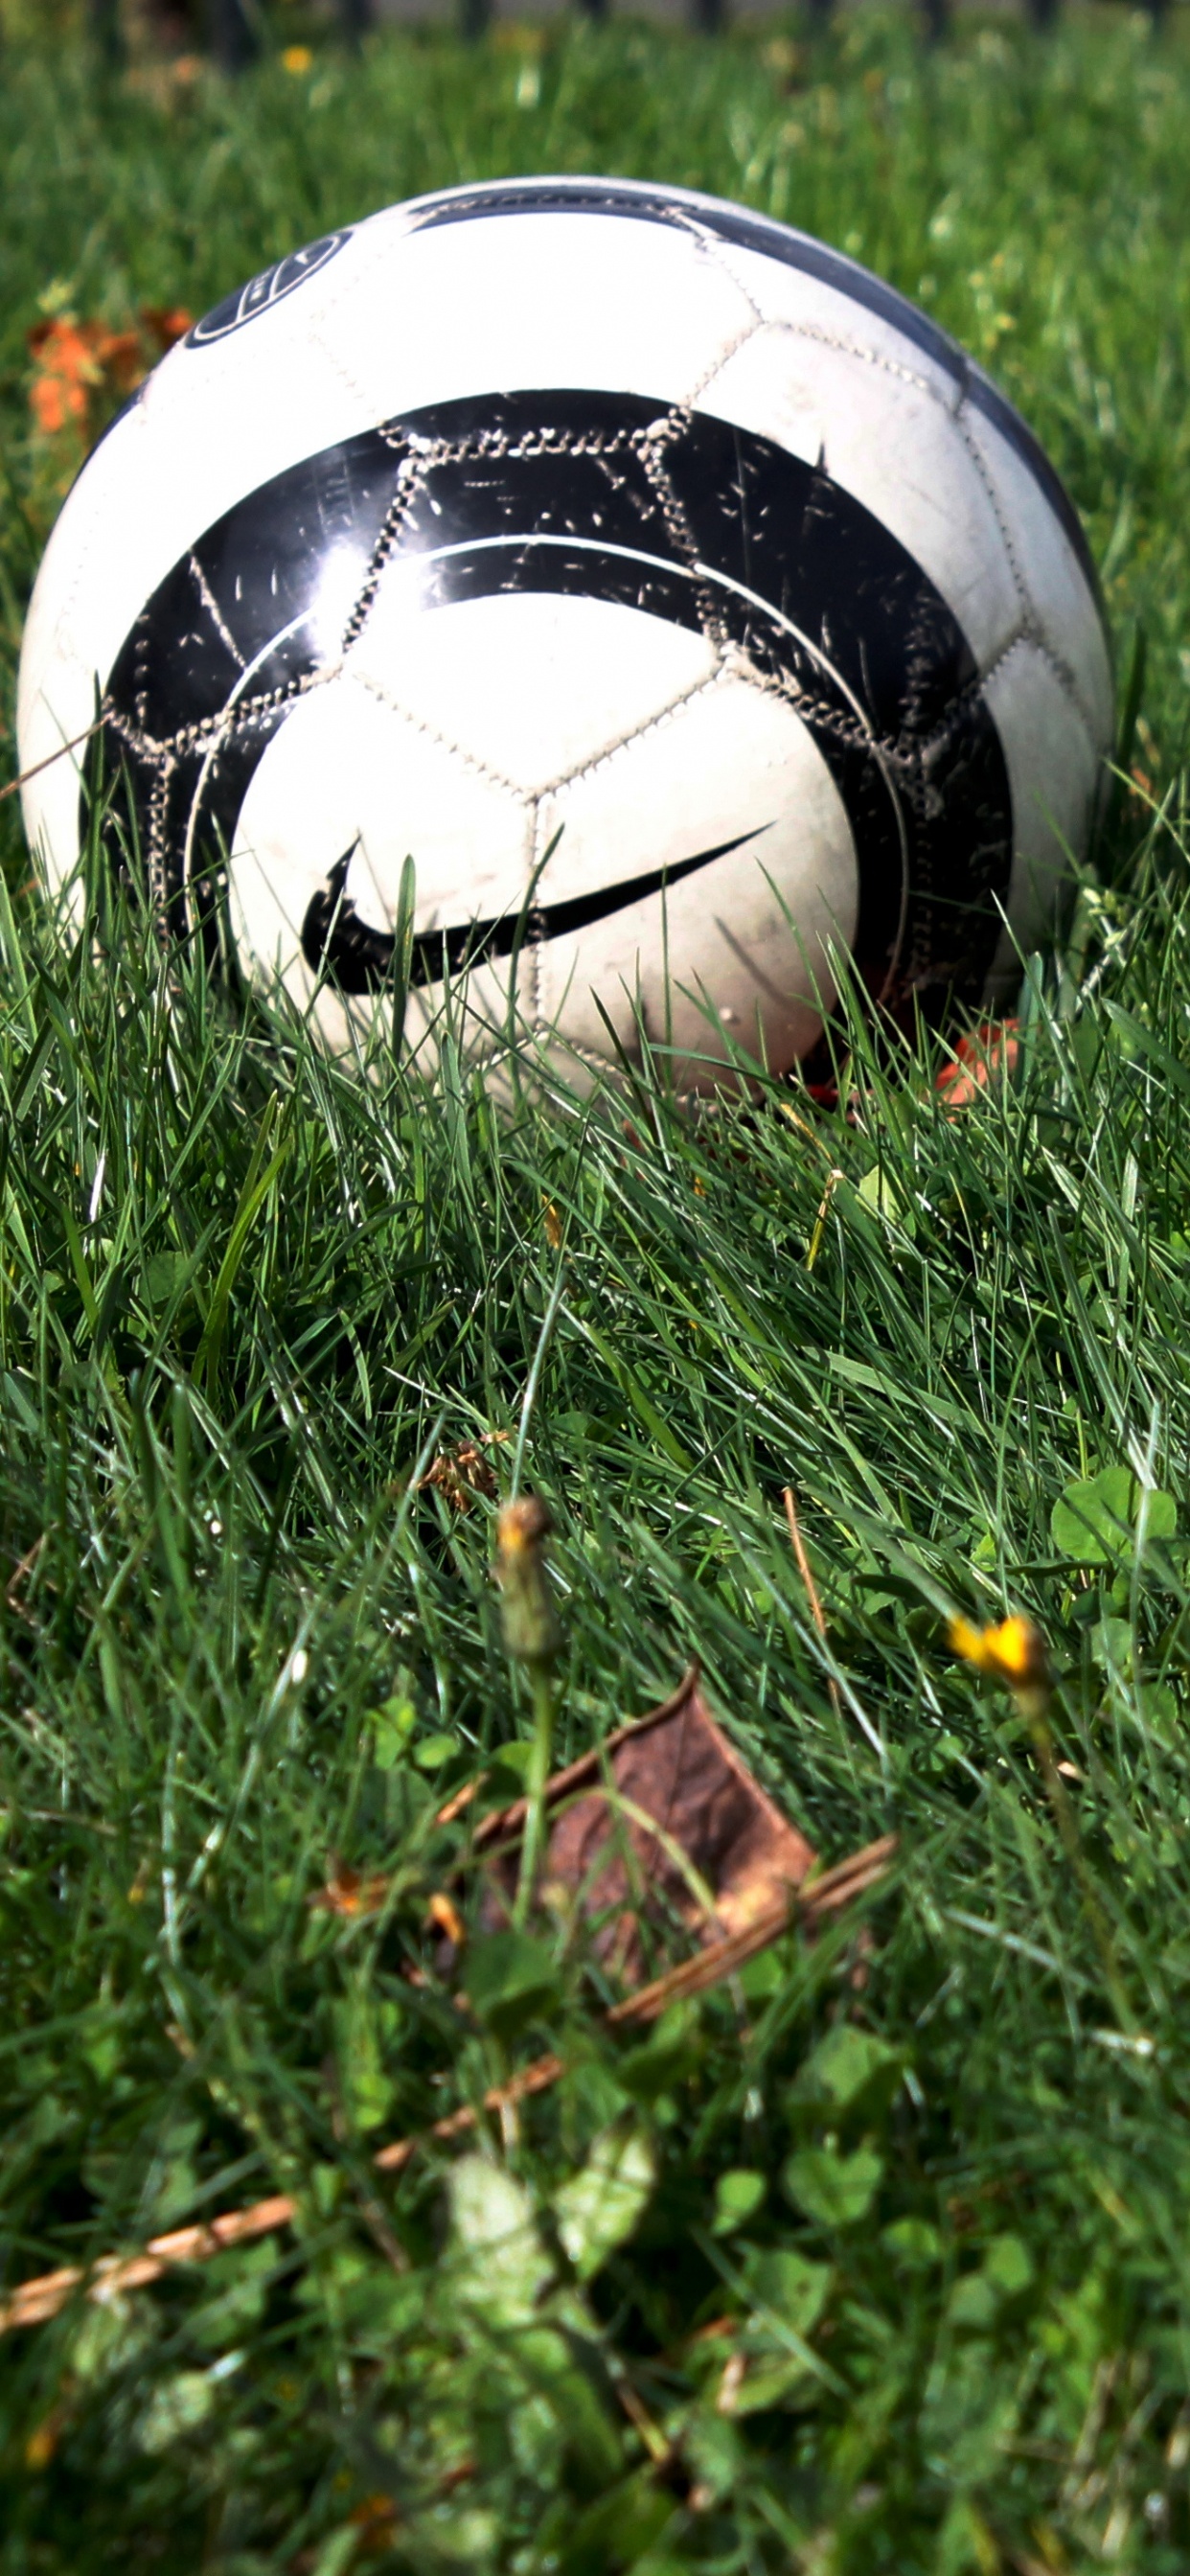 球, 体育设备, 足球, 草, 草坪 壁纸 1242x2688 允许